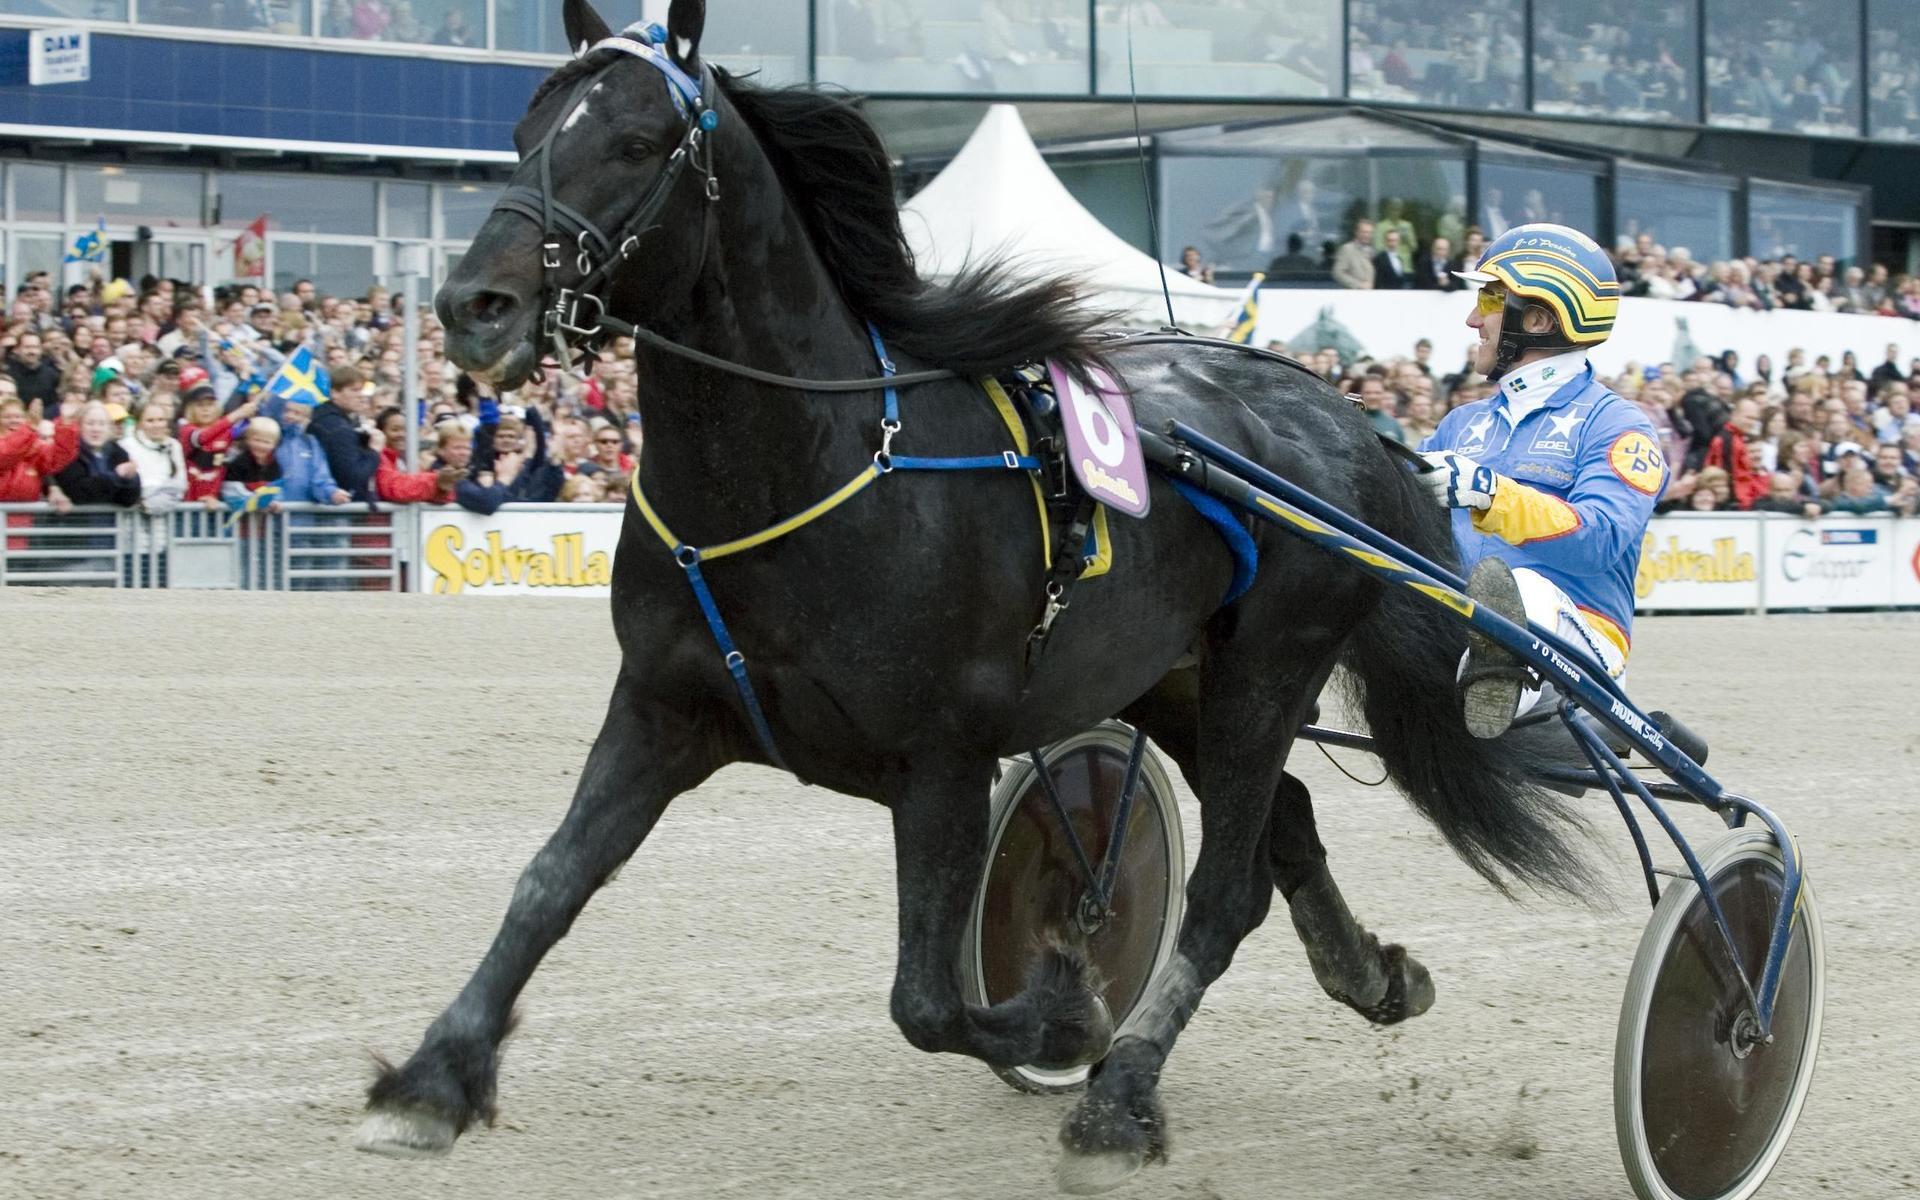 Järvsöfaks vann 2006 ett lopp på ny rekordtid för kallblod. 